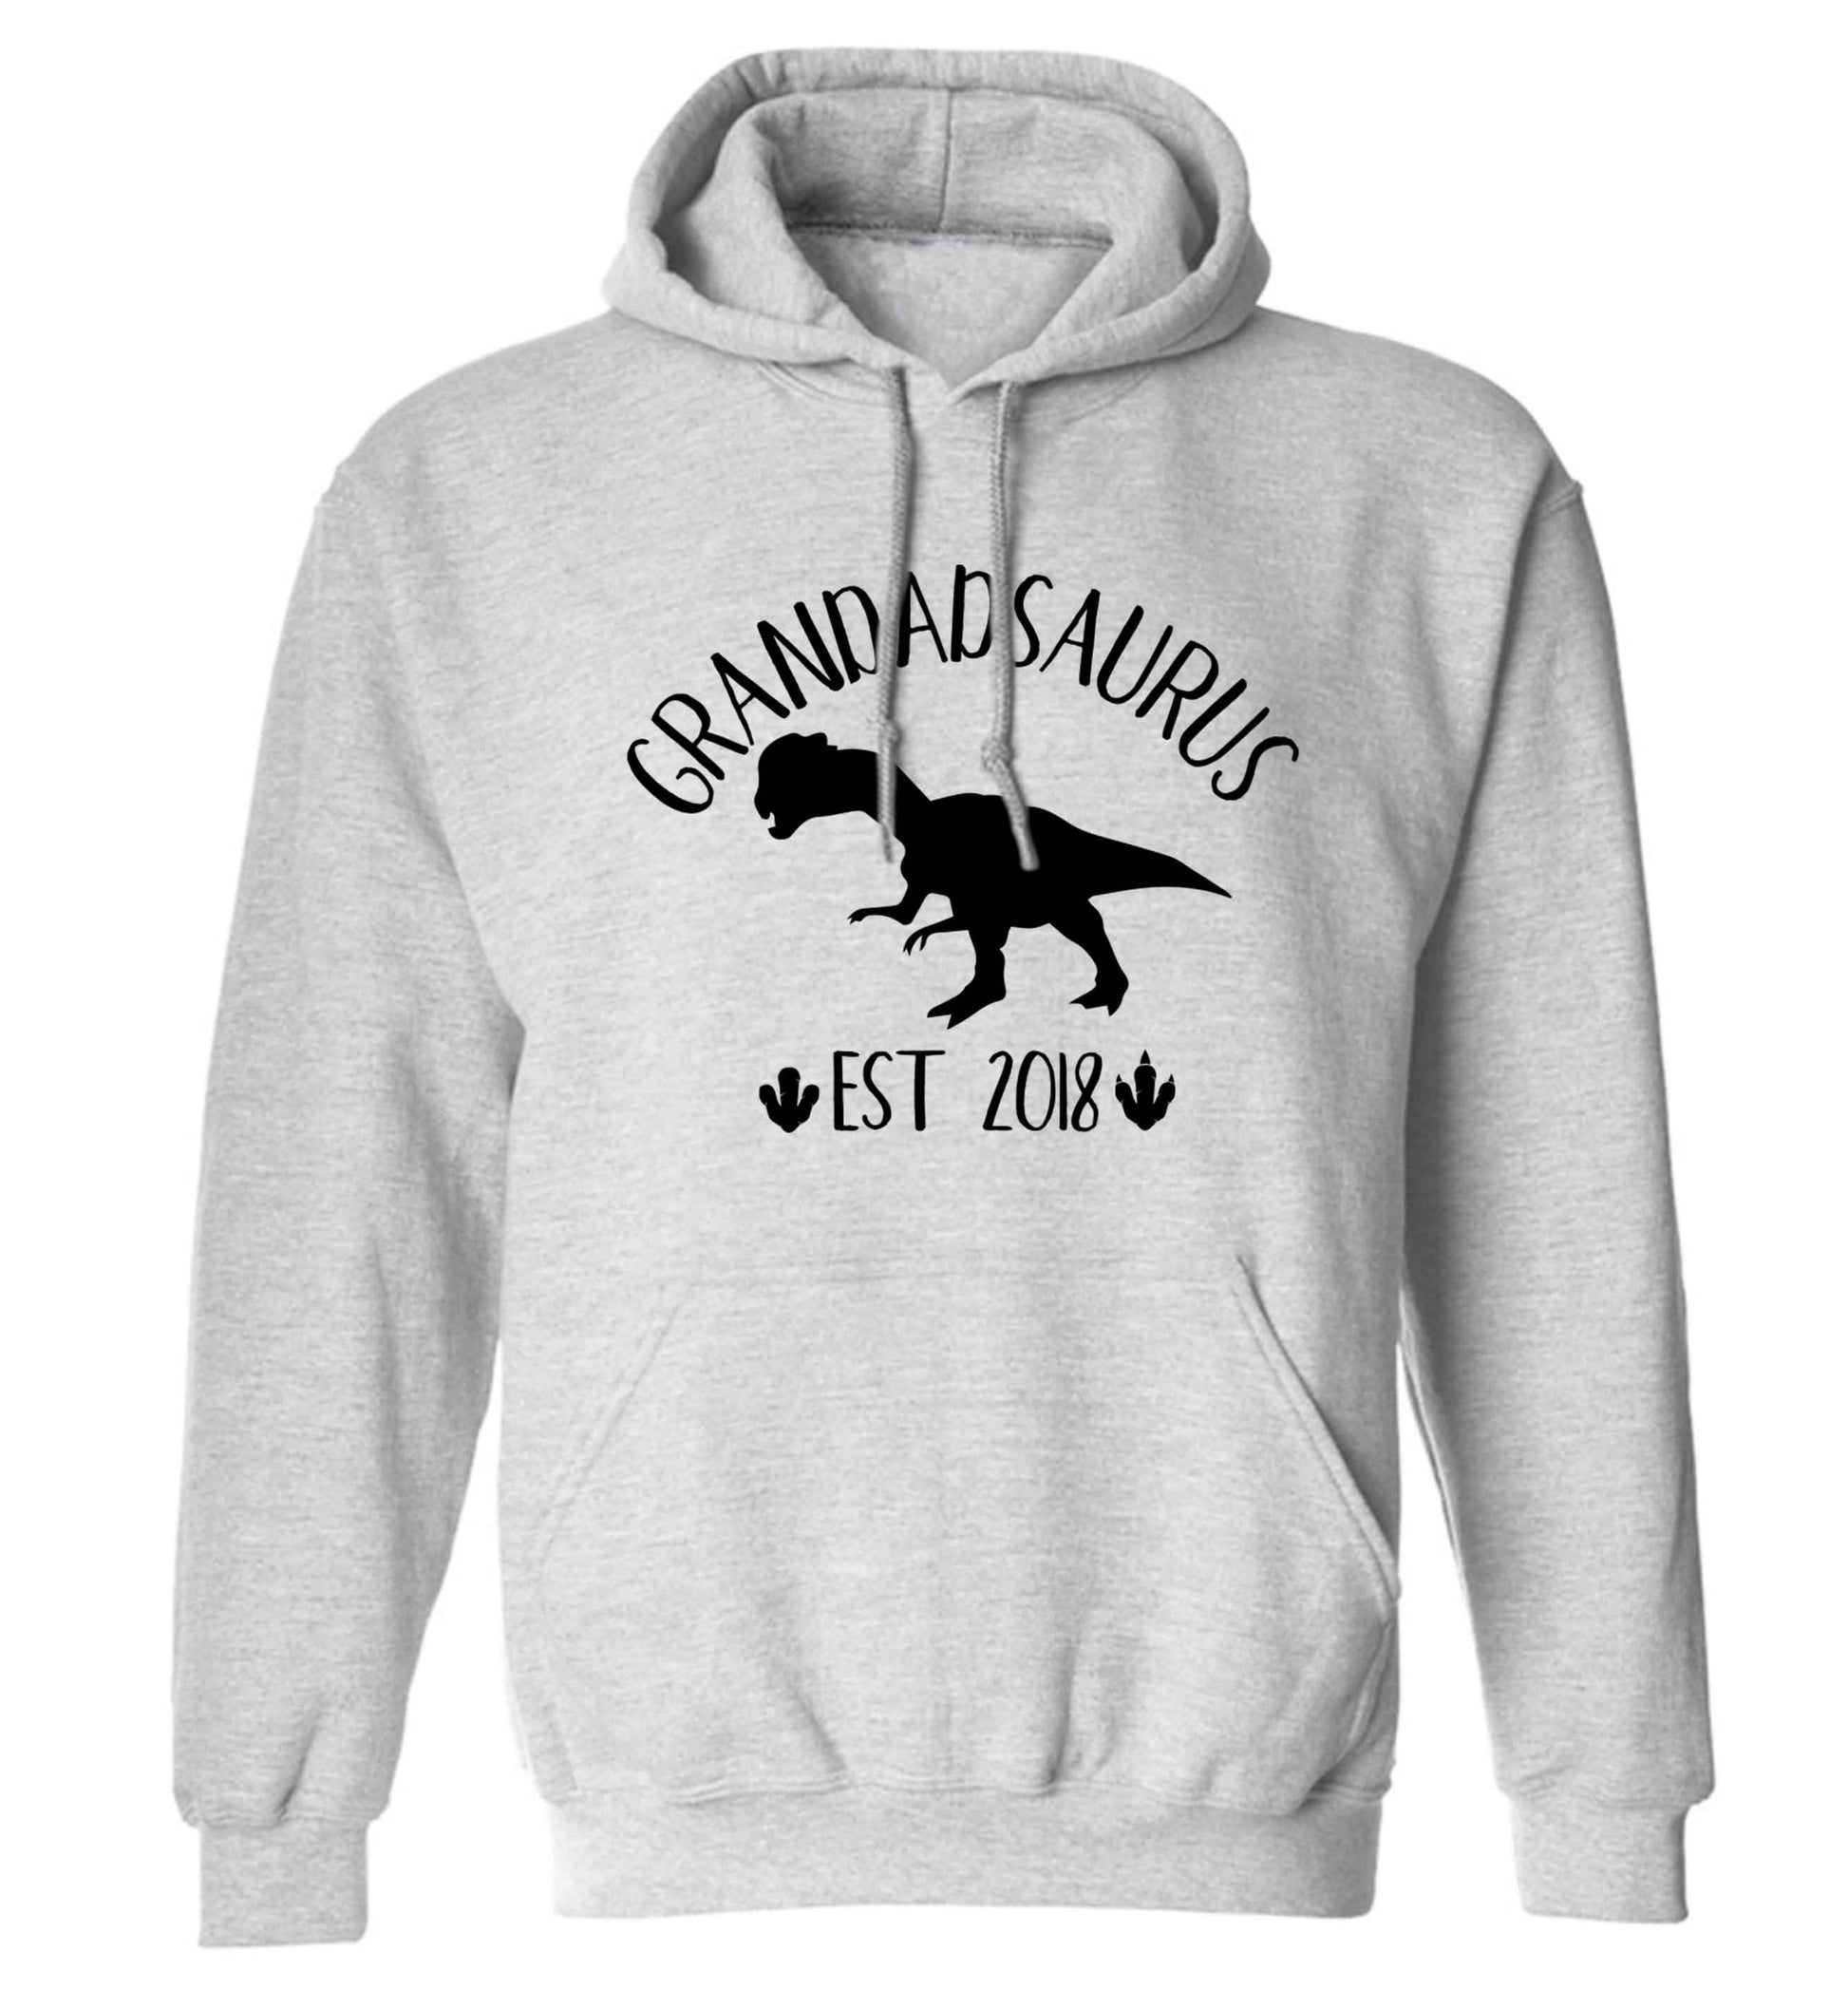 Personalised grandadsaurus since (custom date) adults unisex grey hoodie 2XL